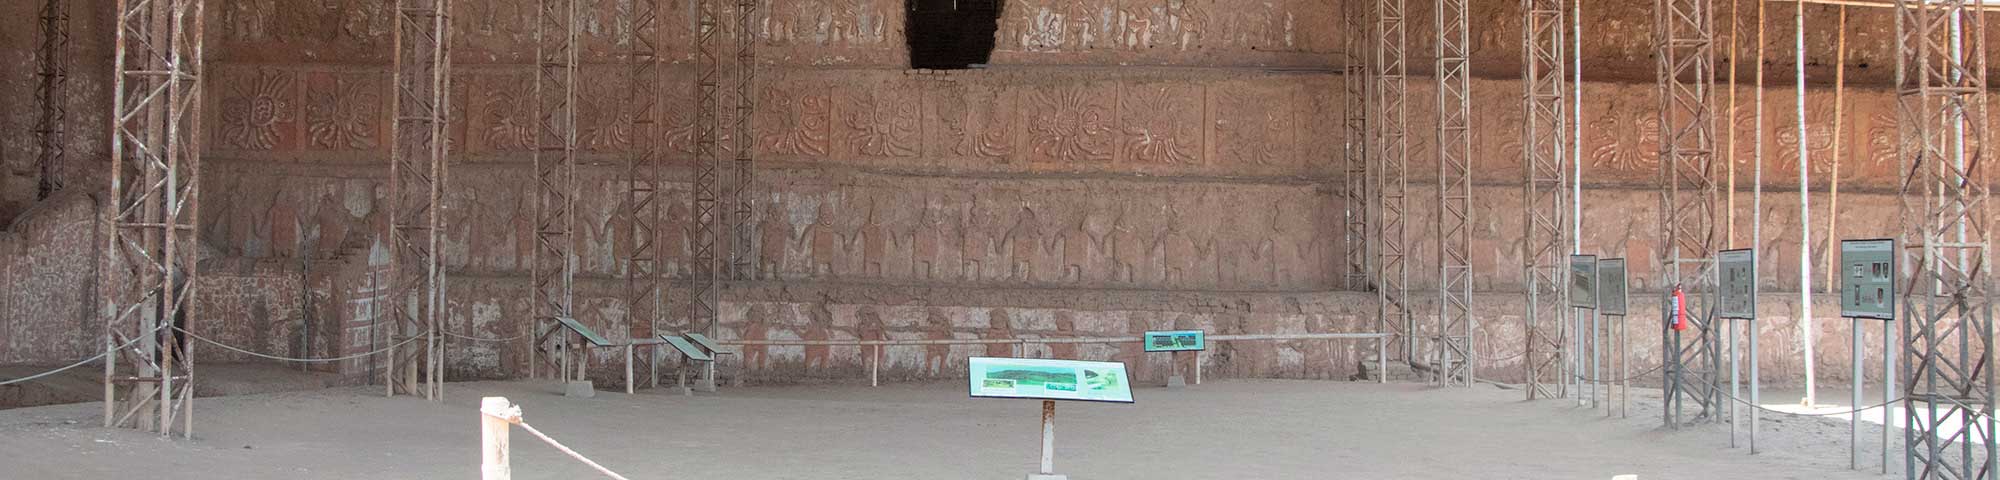 Complejo Arqueológico Huacas de Moche